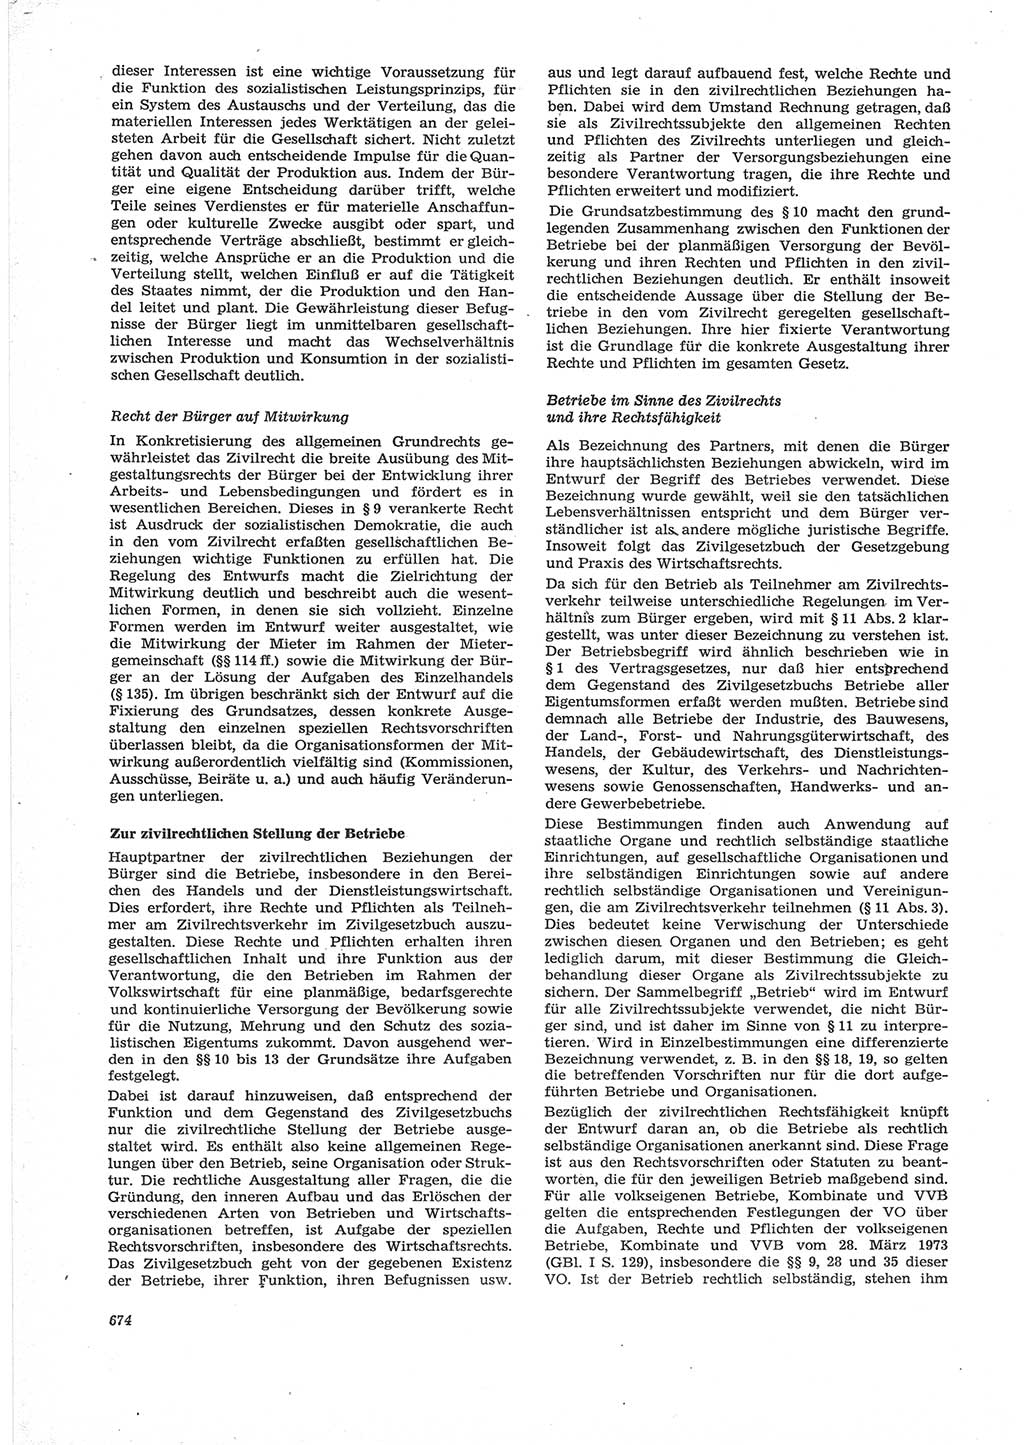 Neue Justiz (NJ), Zeitschrift für Recht und Rechtswissenschaft [Deutsche Demokratische Republik (DDR)], 28. Jahrgang 1974, Seite 674 (NJ DDR 1974, S. 674)